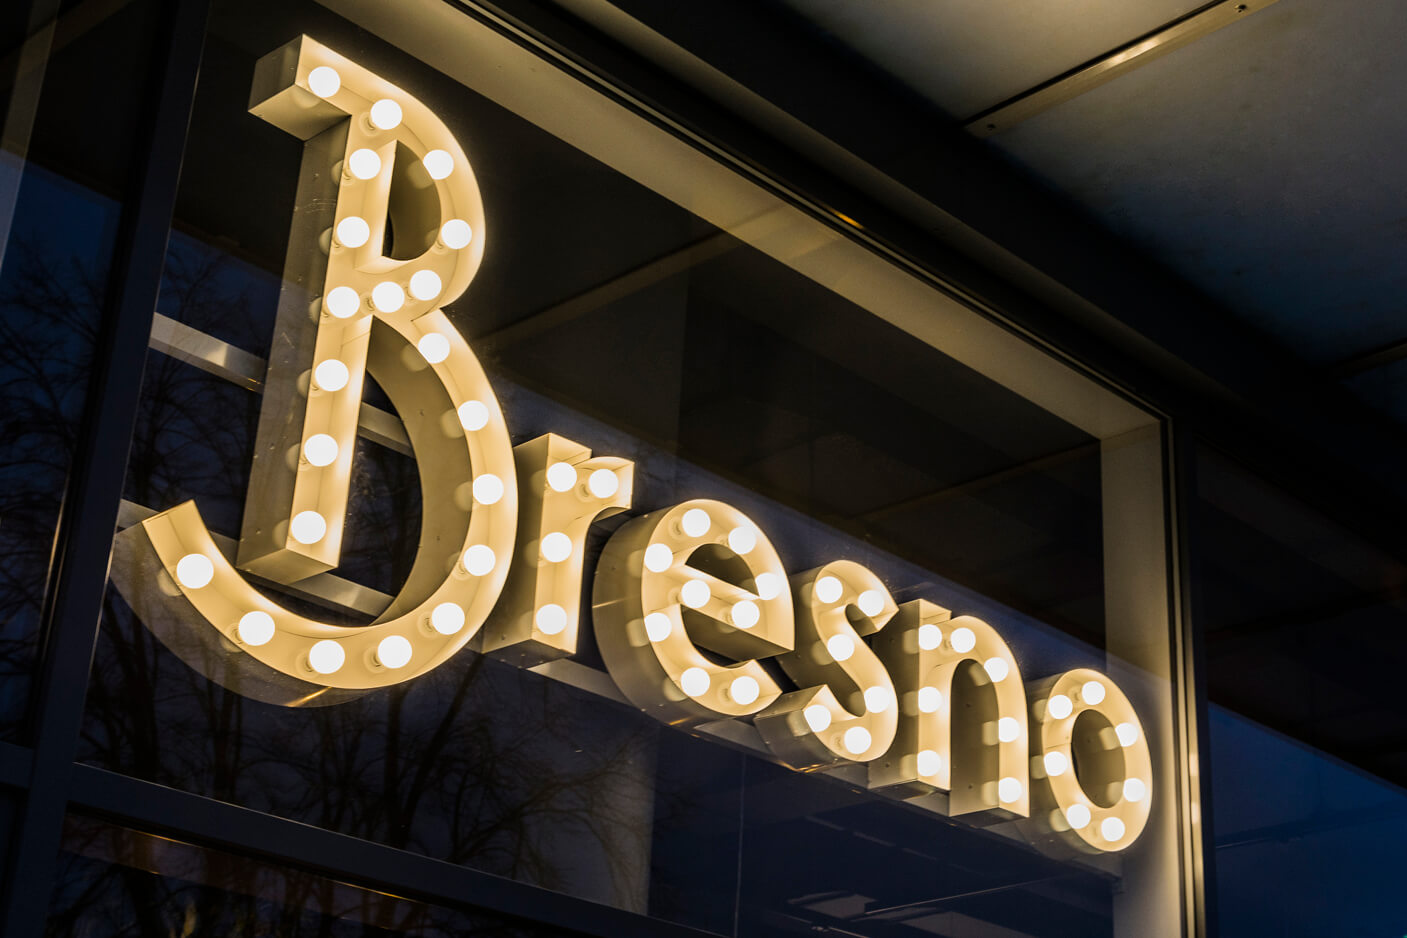 Bresno - Bresno - Lettres avec ampoules derrière le verre